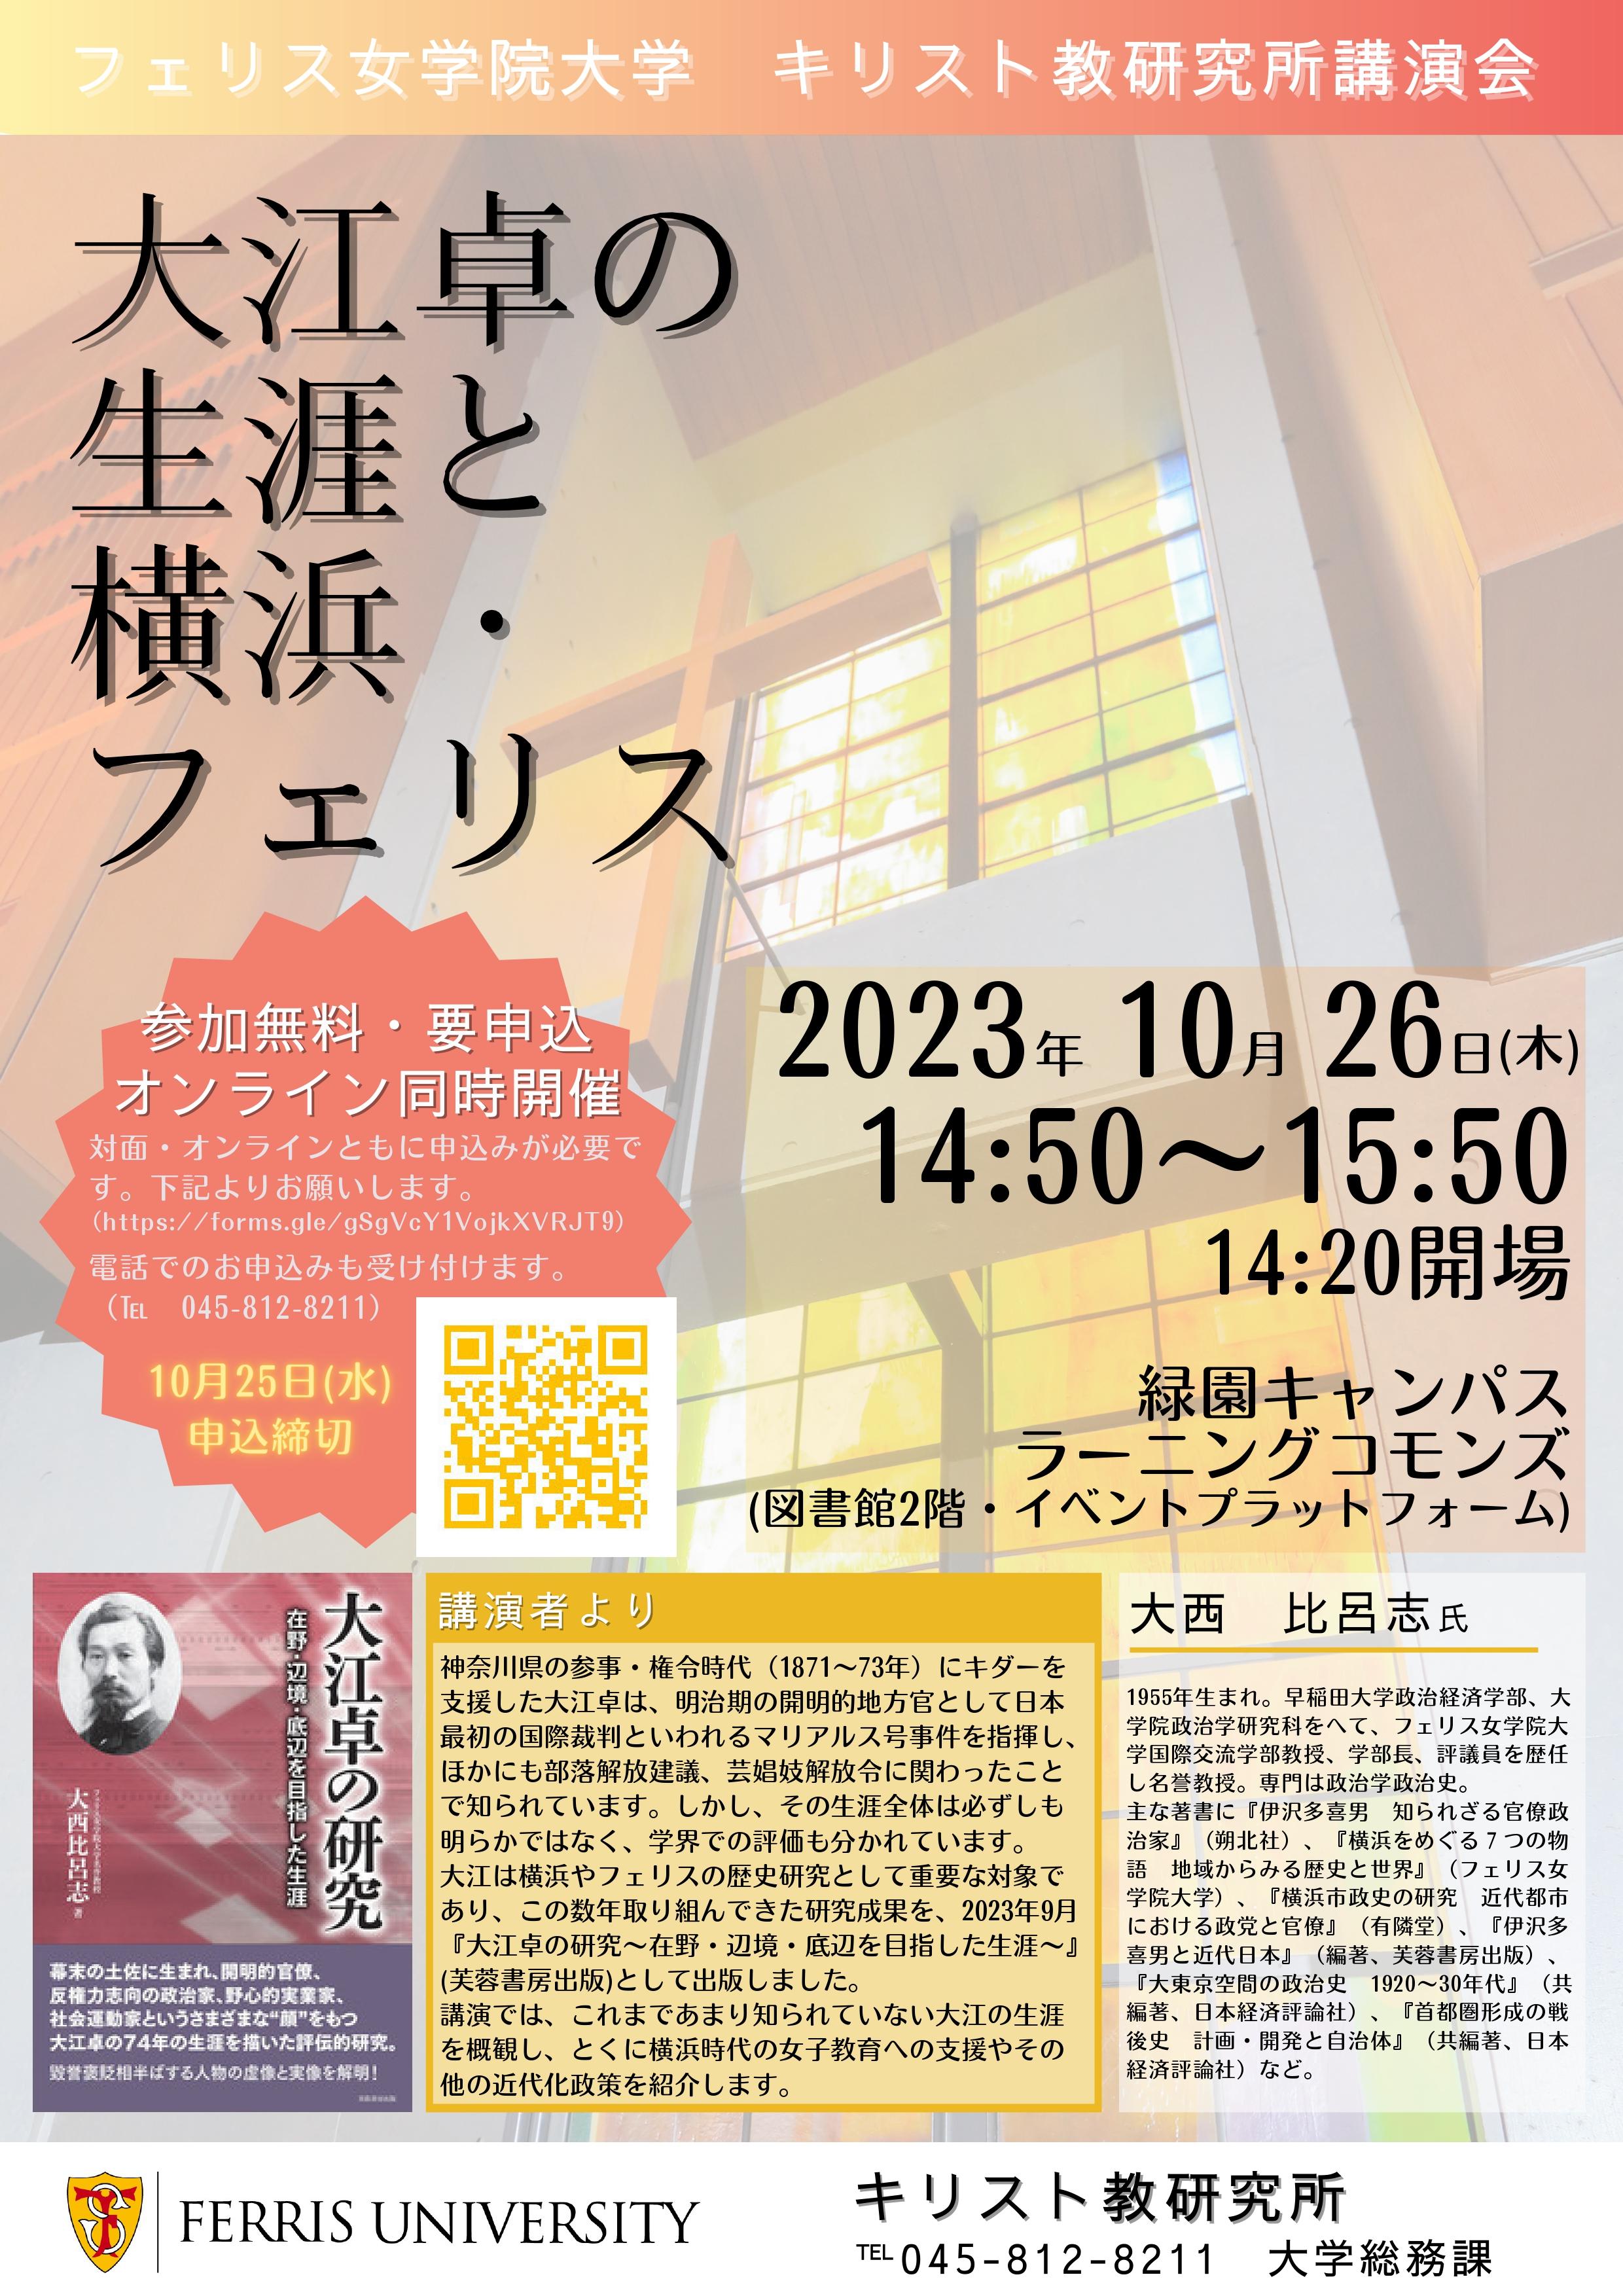 フェリス女学院大学キリスト教研究所が講演会「大江卓の生涯と横浜・フェリス」をハイブリッド方式で2023年10月26日（木）開催、一般の方にも公開します。